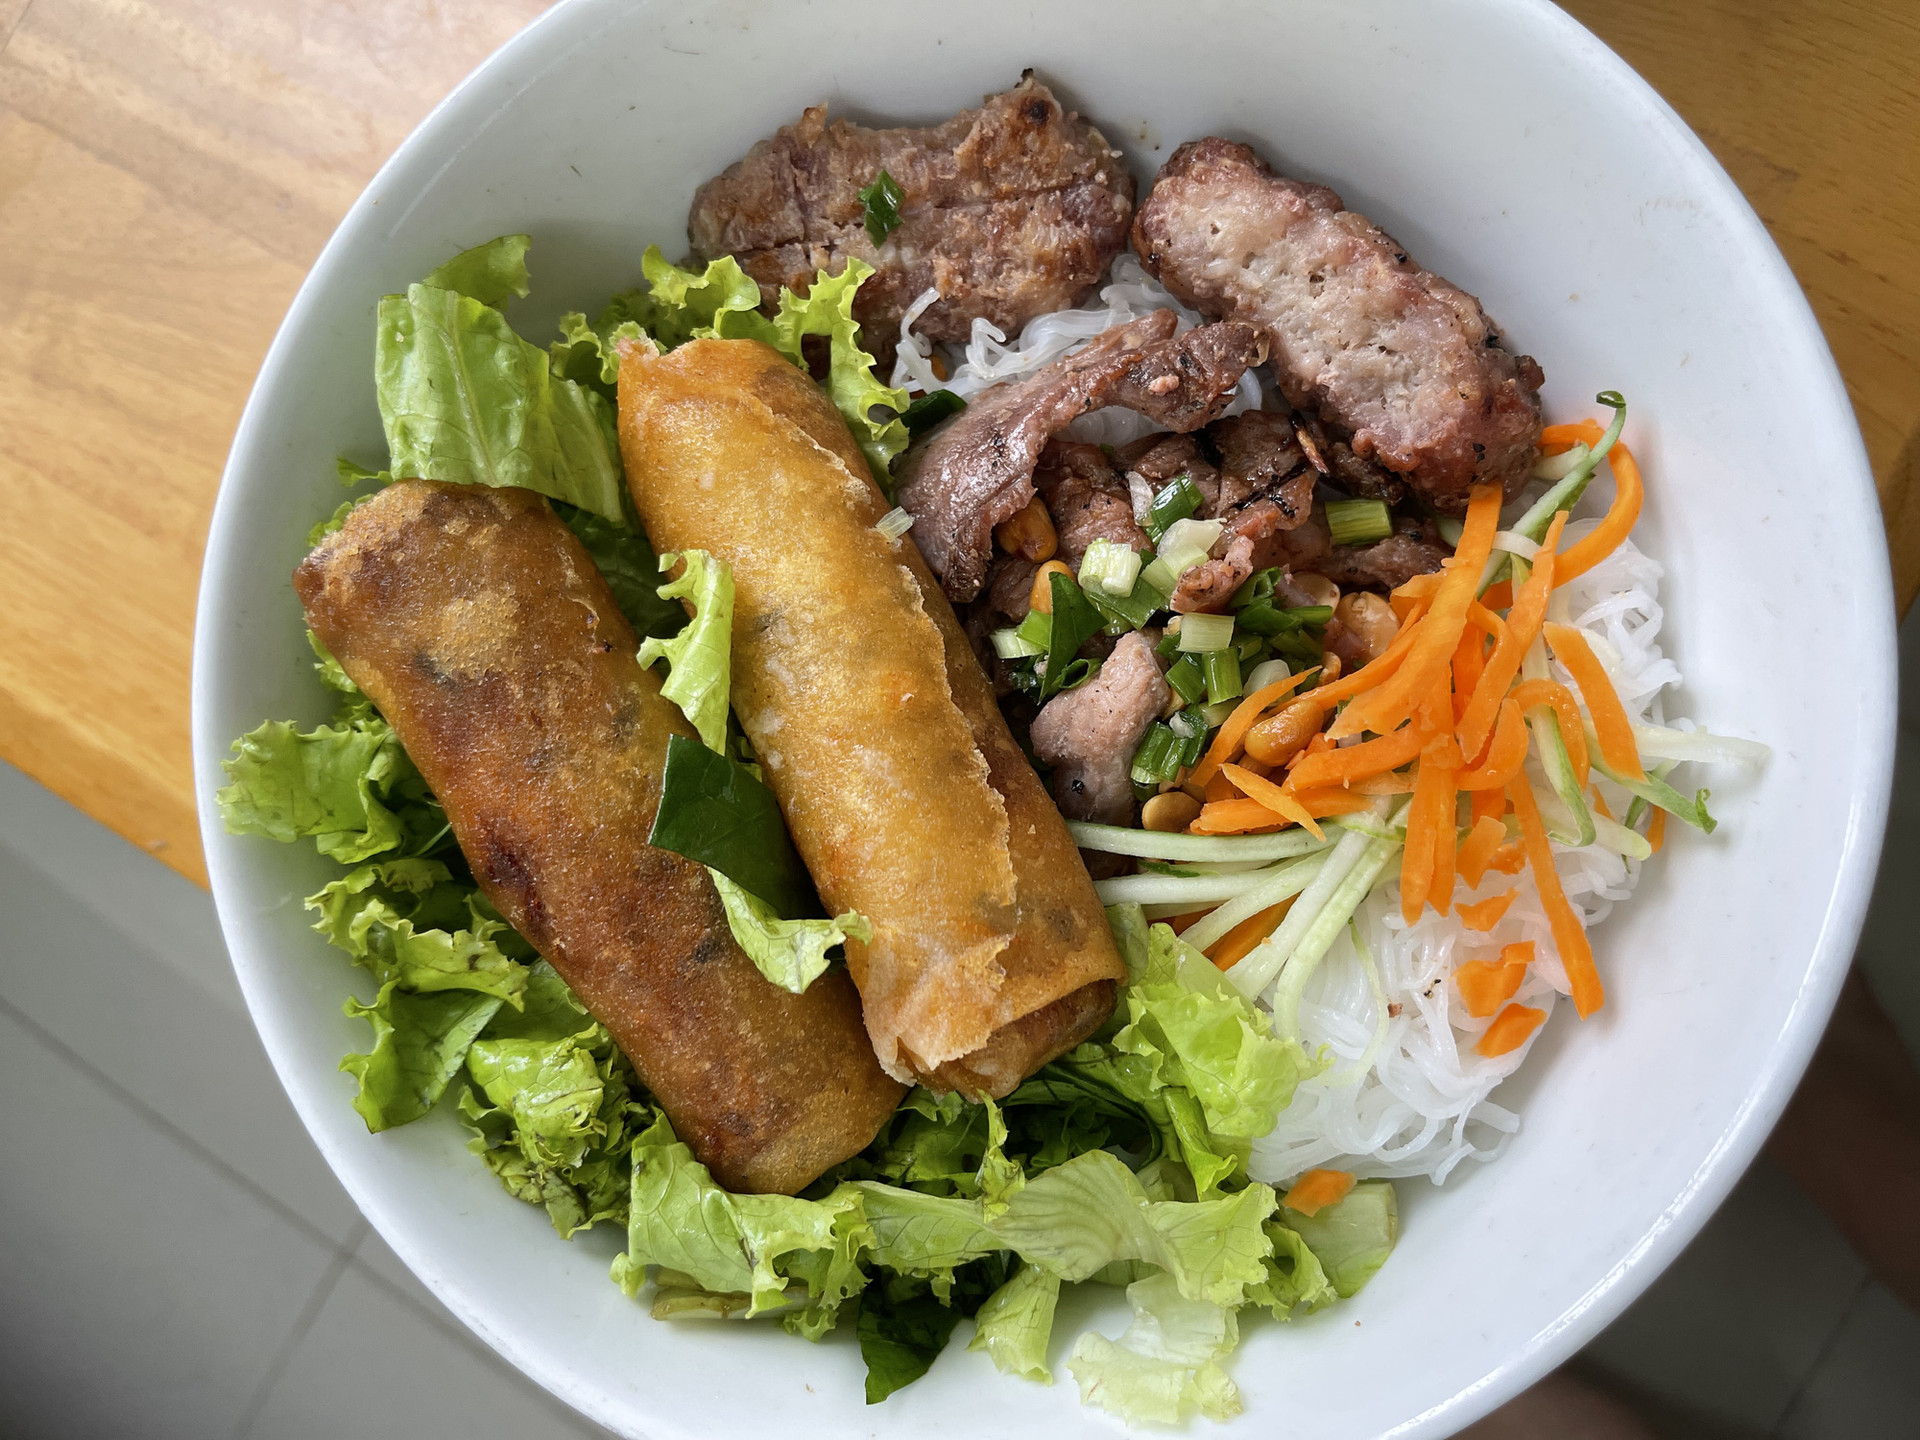 Bún thịt nướng chả giò, món ăn được lòng cả người Việt và người nước ngoài - Ảnh: NGỌC ĐÔNG